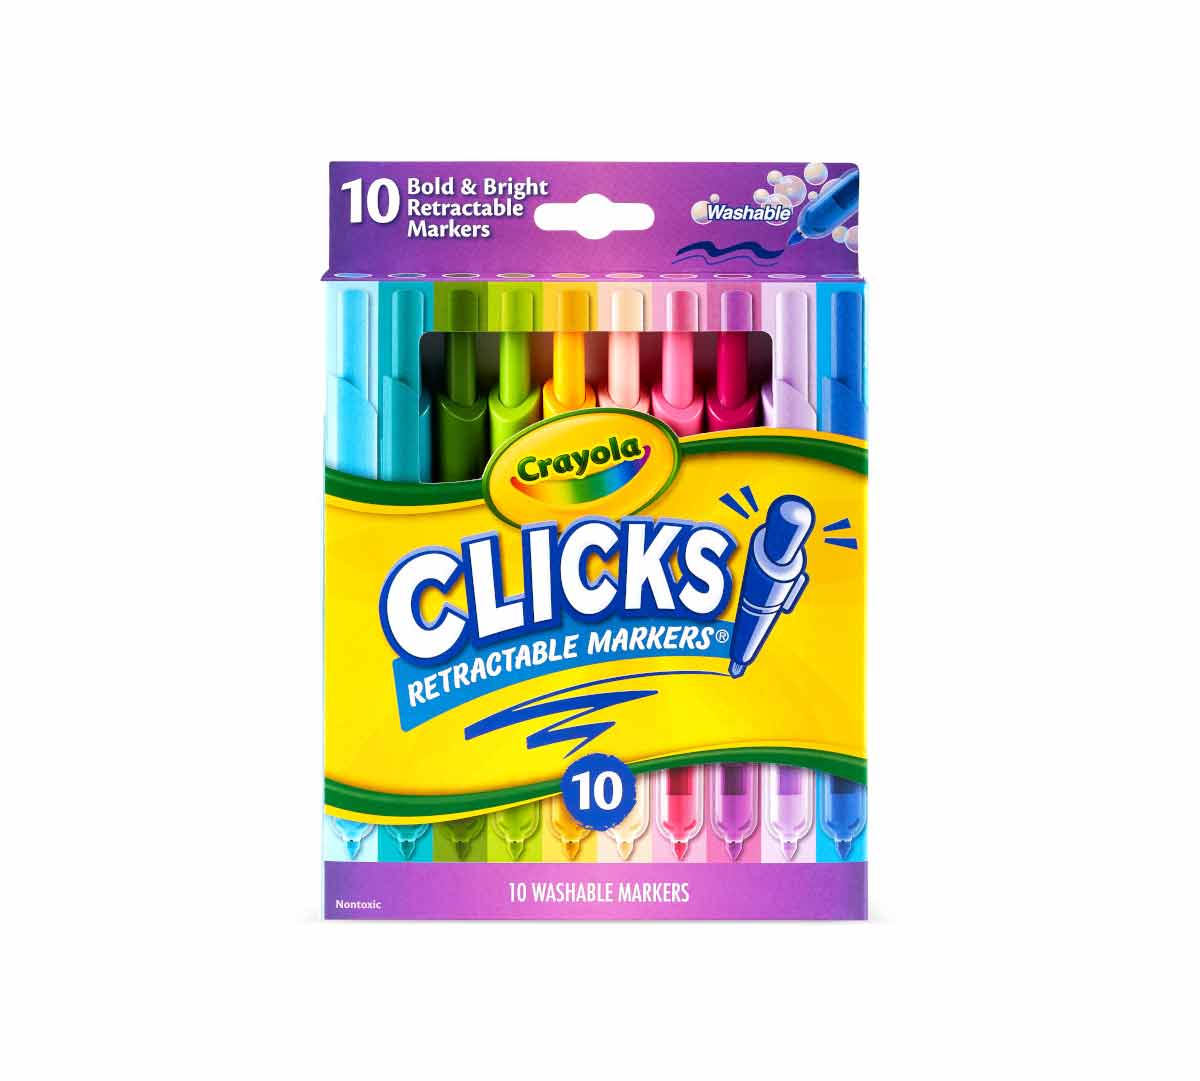 Crayola CLICKS Retractable Markers Quick Review #shorts #crayola  #artsupplyreview 